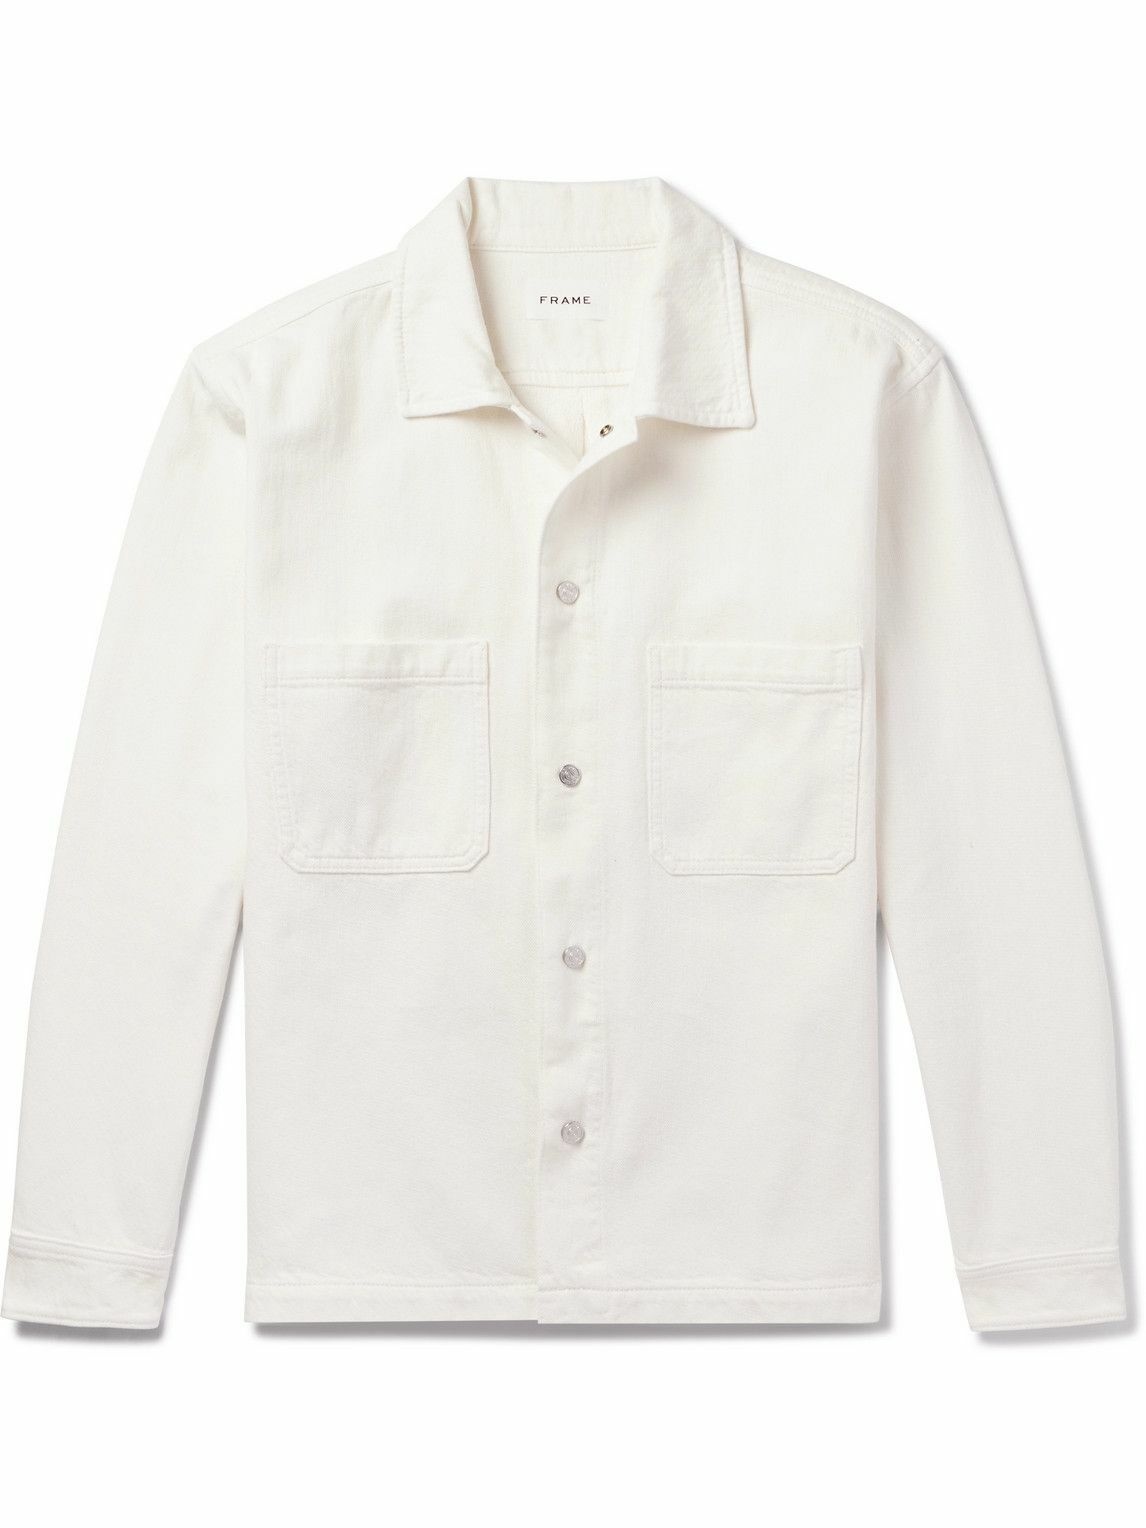 FRAME - Denim Shirt - White Frame Denim